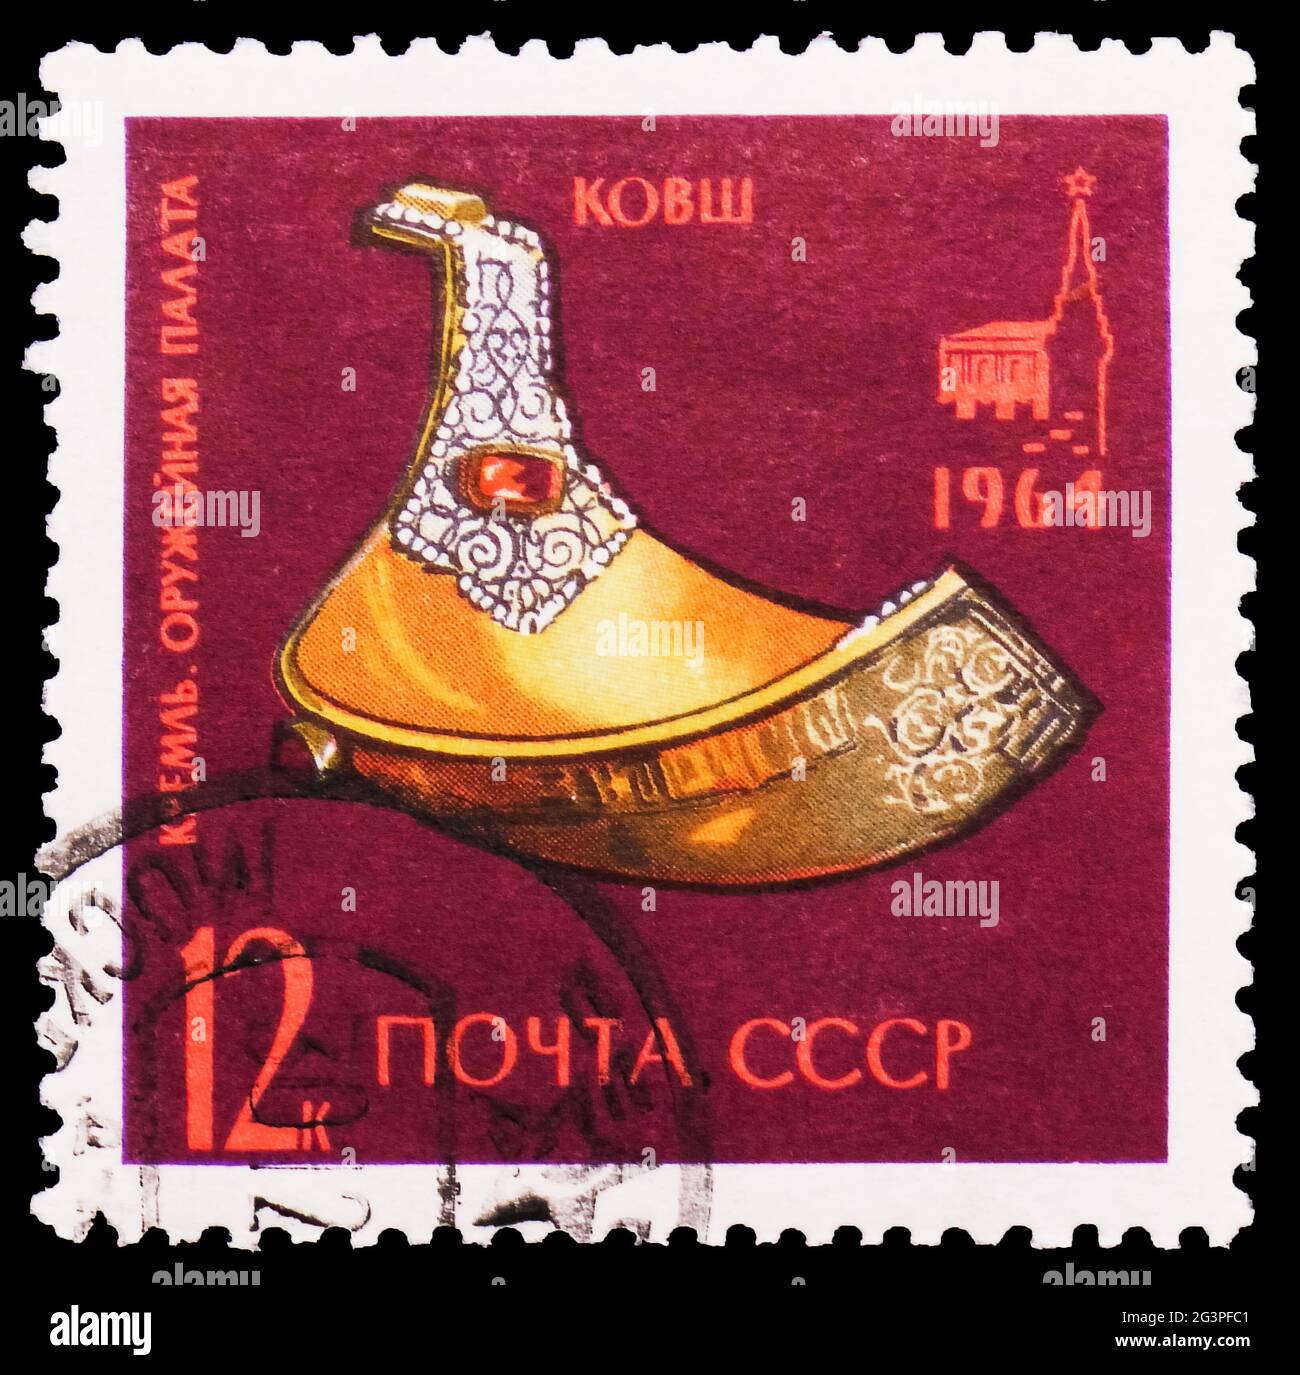 MOSKAU, RUSSLAND - 22. MÄRZ 2020: Die in der Sowjetunion gedruckte Briefmarke zeigt die Goldene Schöpfkelle (1618), Serie des Kremlin Armory Museums, um 1964 Stockfoto